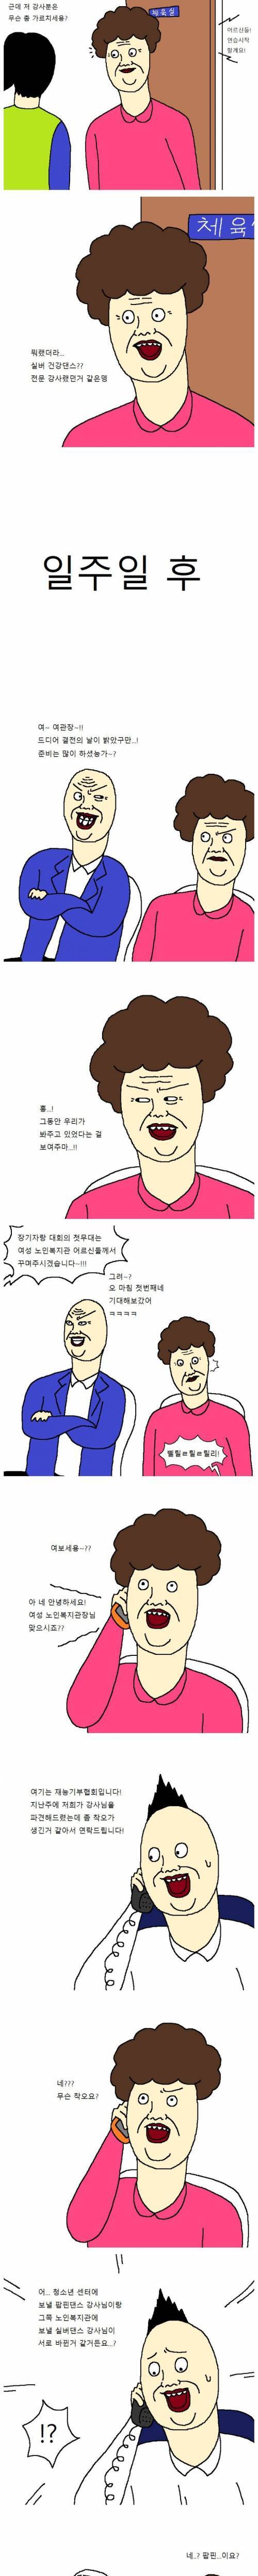 할머니들이 장기자랑대회 출전하는 만화.jpg